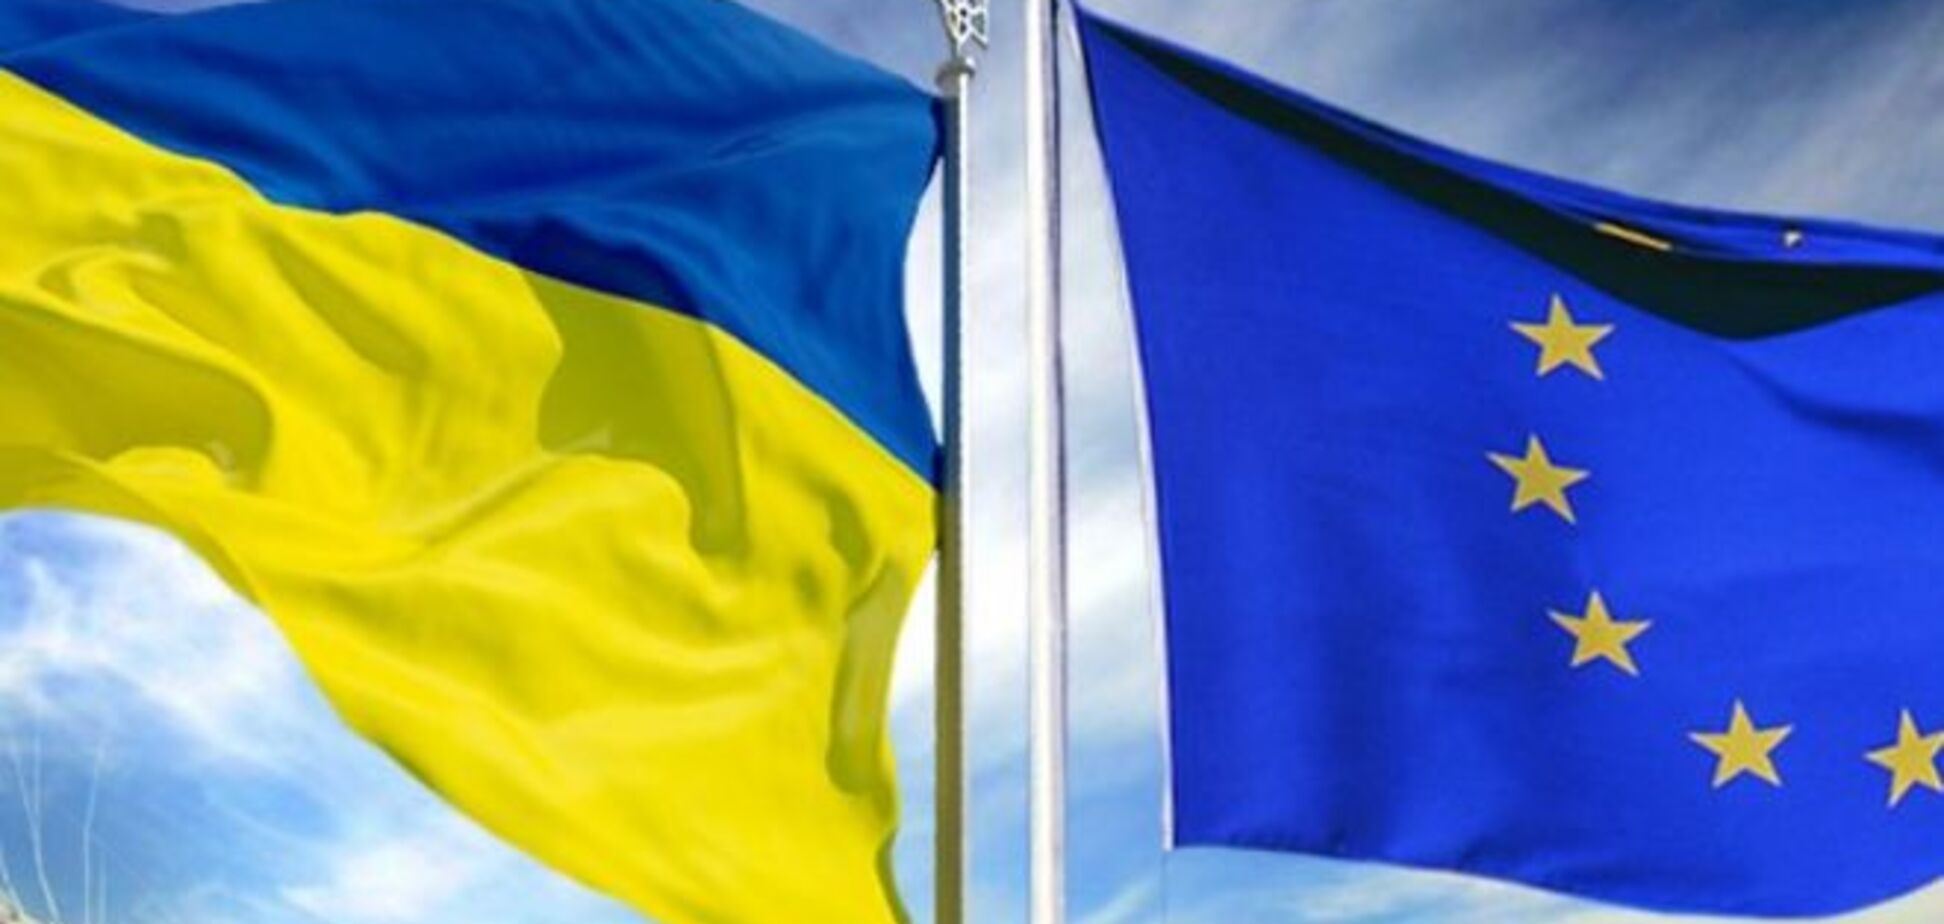 Єлісєєв розповів про загрозу провалу саміту Україна - ЄС у Ризі